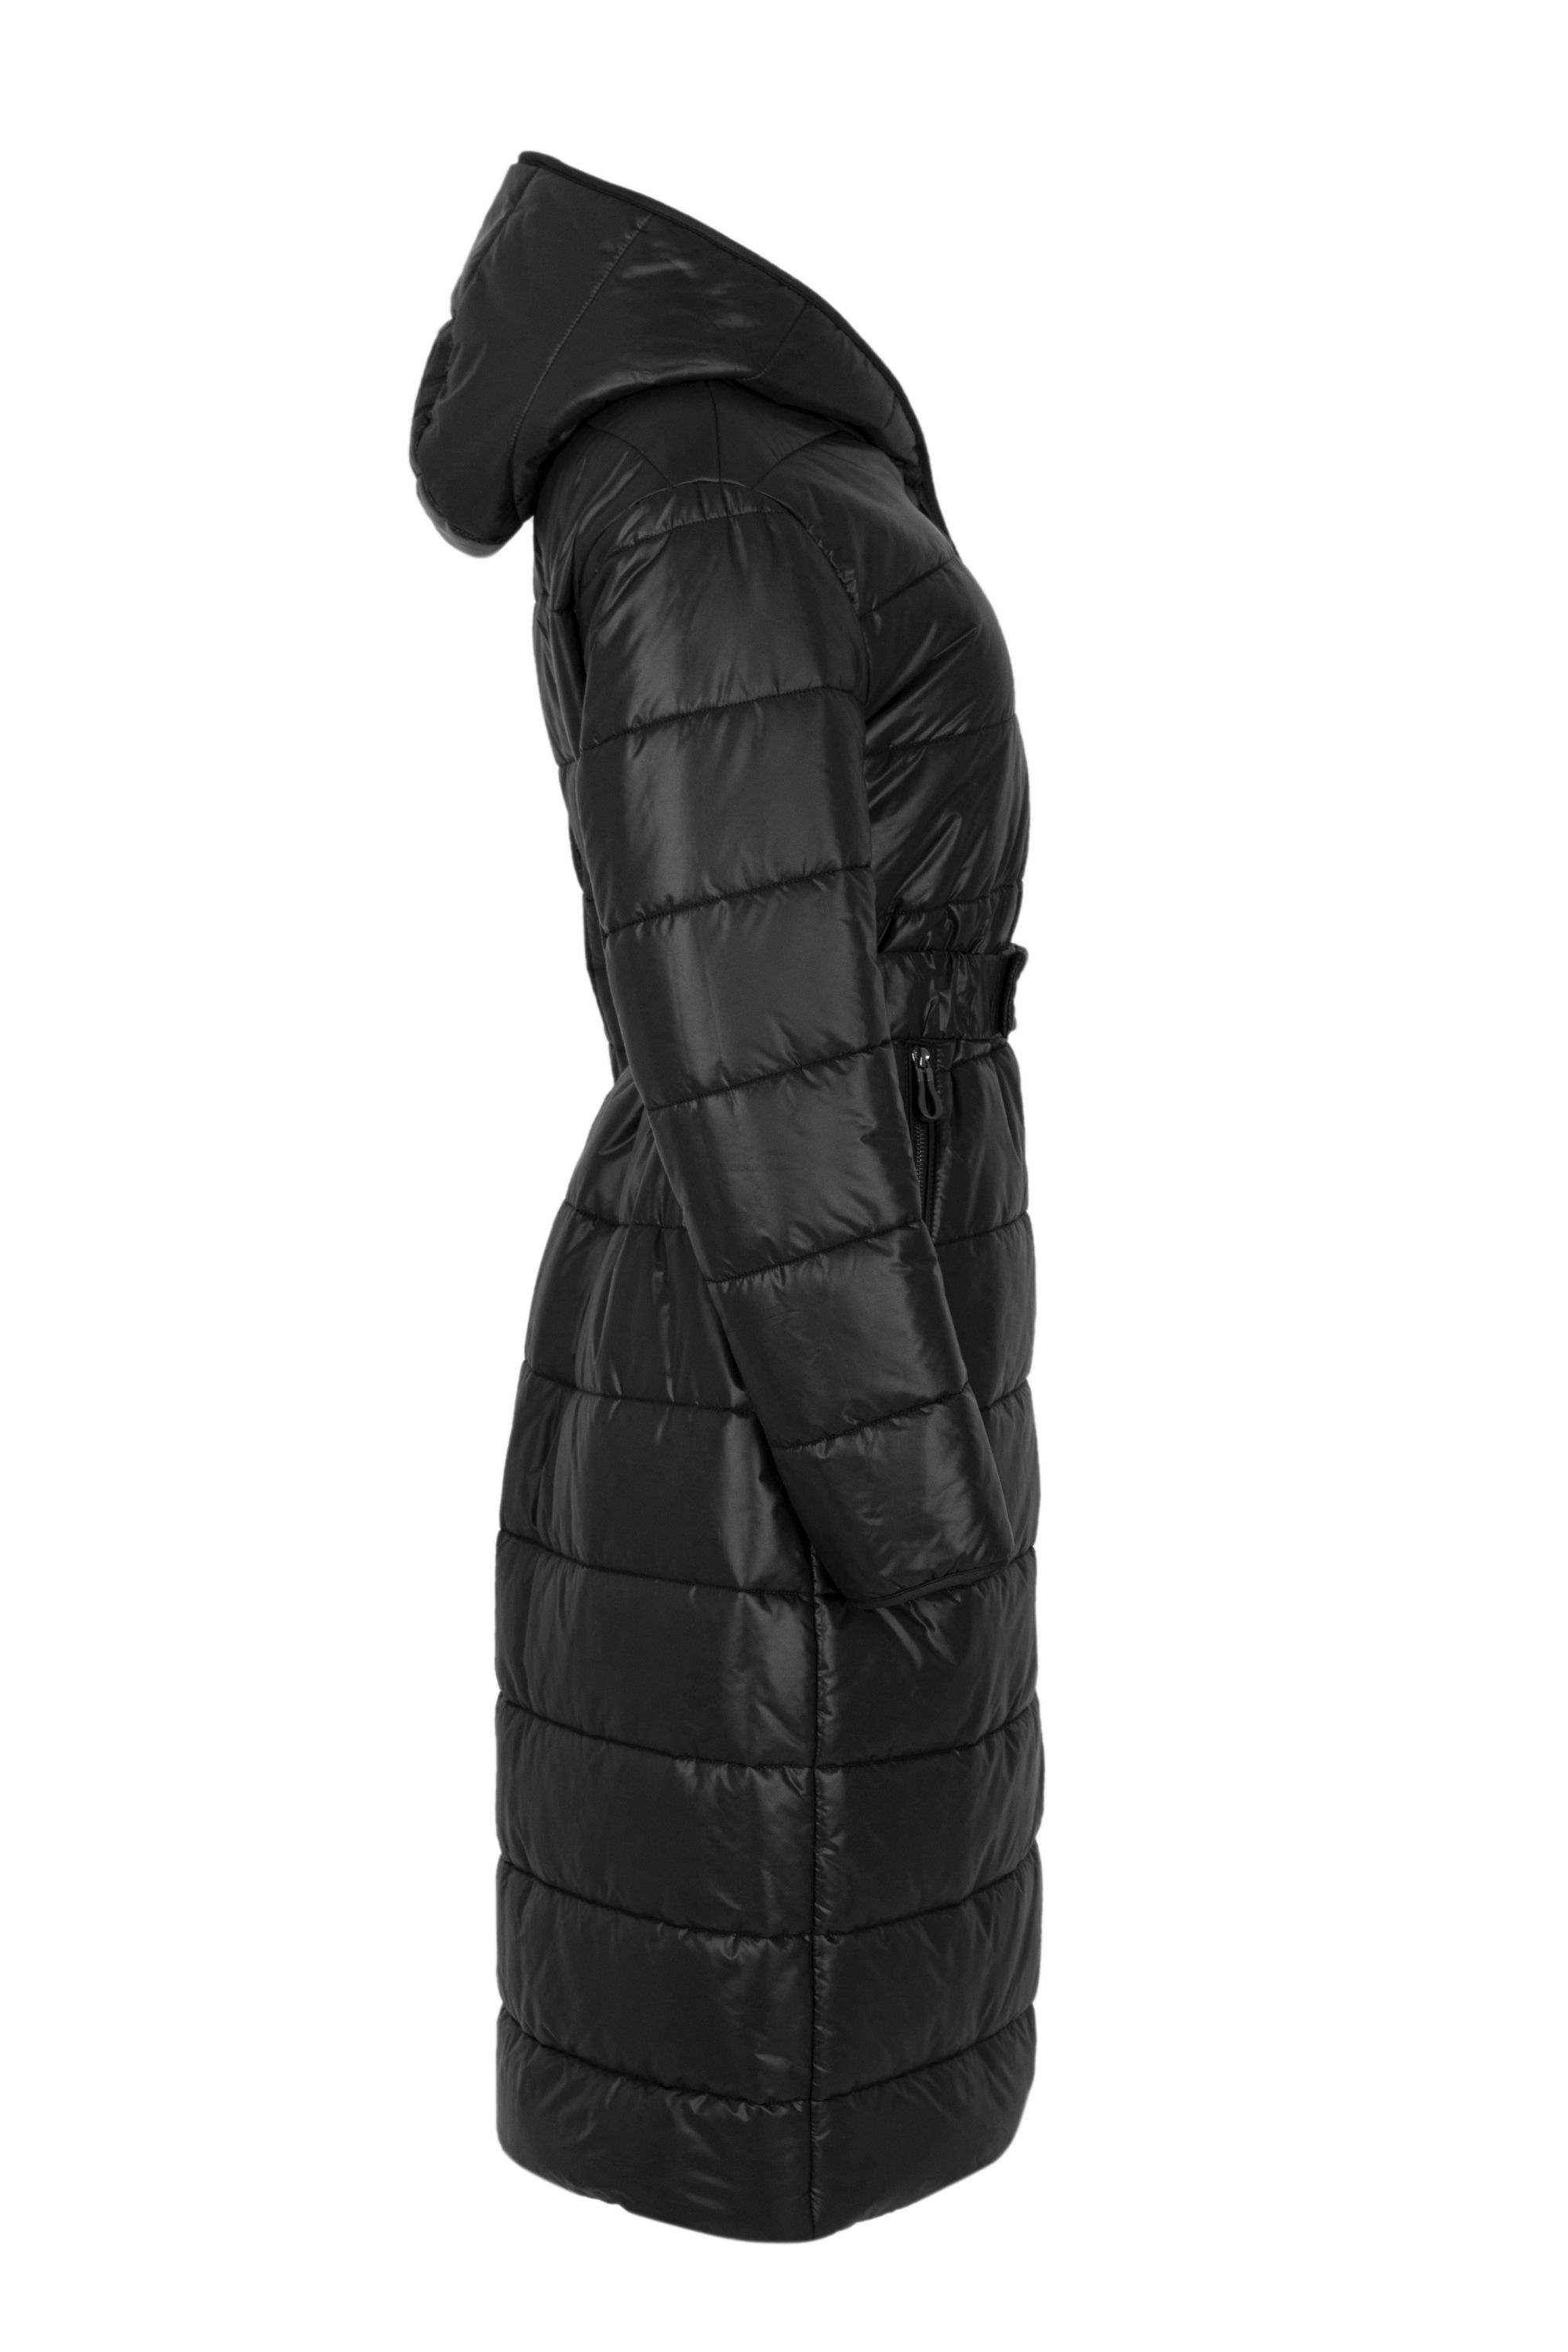 Пальто женское плащевое утепленное 5-12410-1. Фото 2.